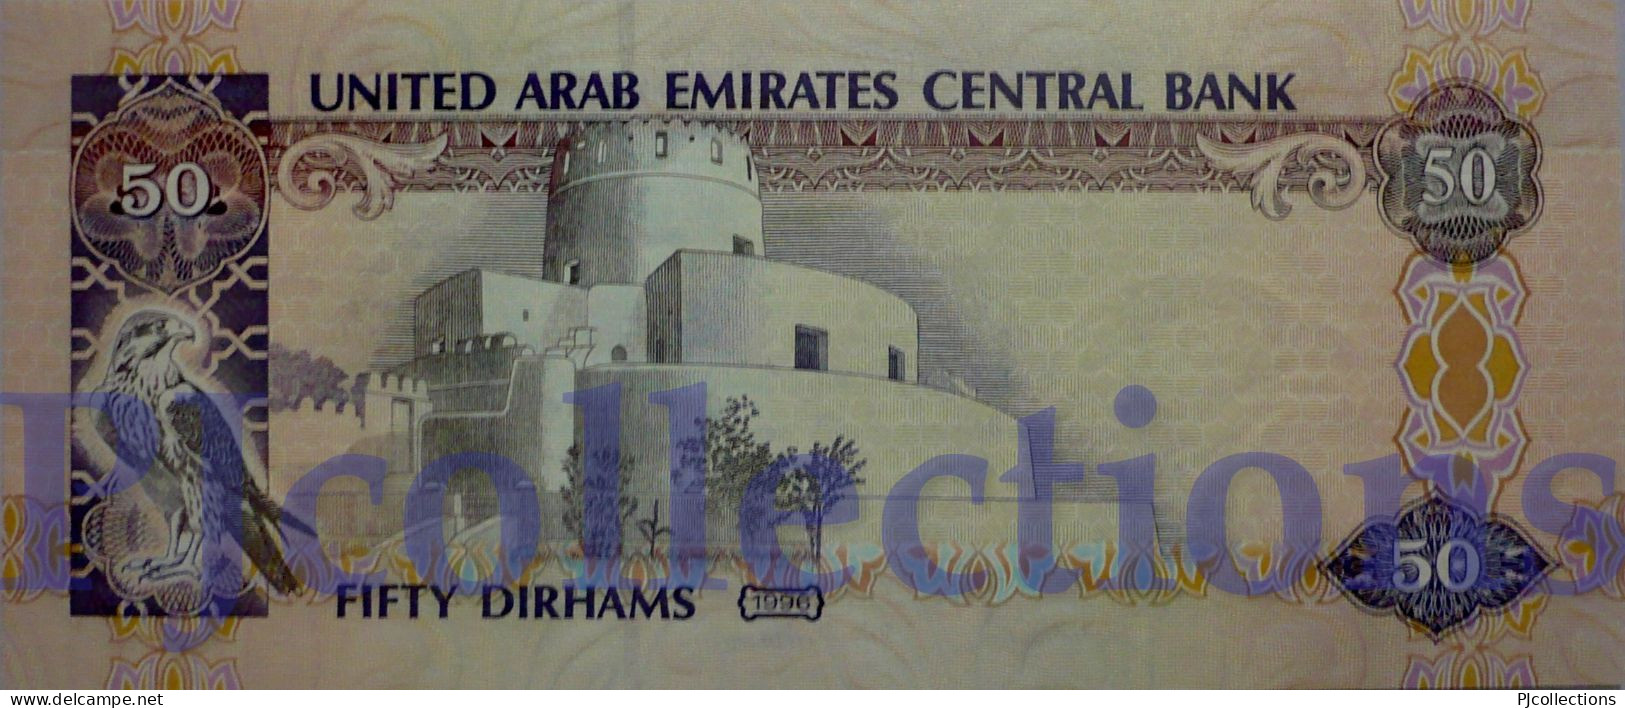 UNITED ARAB EMIRATES 50 DIRHAMS 1996 PICK 14b UNC - Emiratos Arabes Unidos